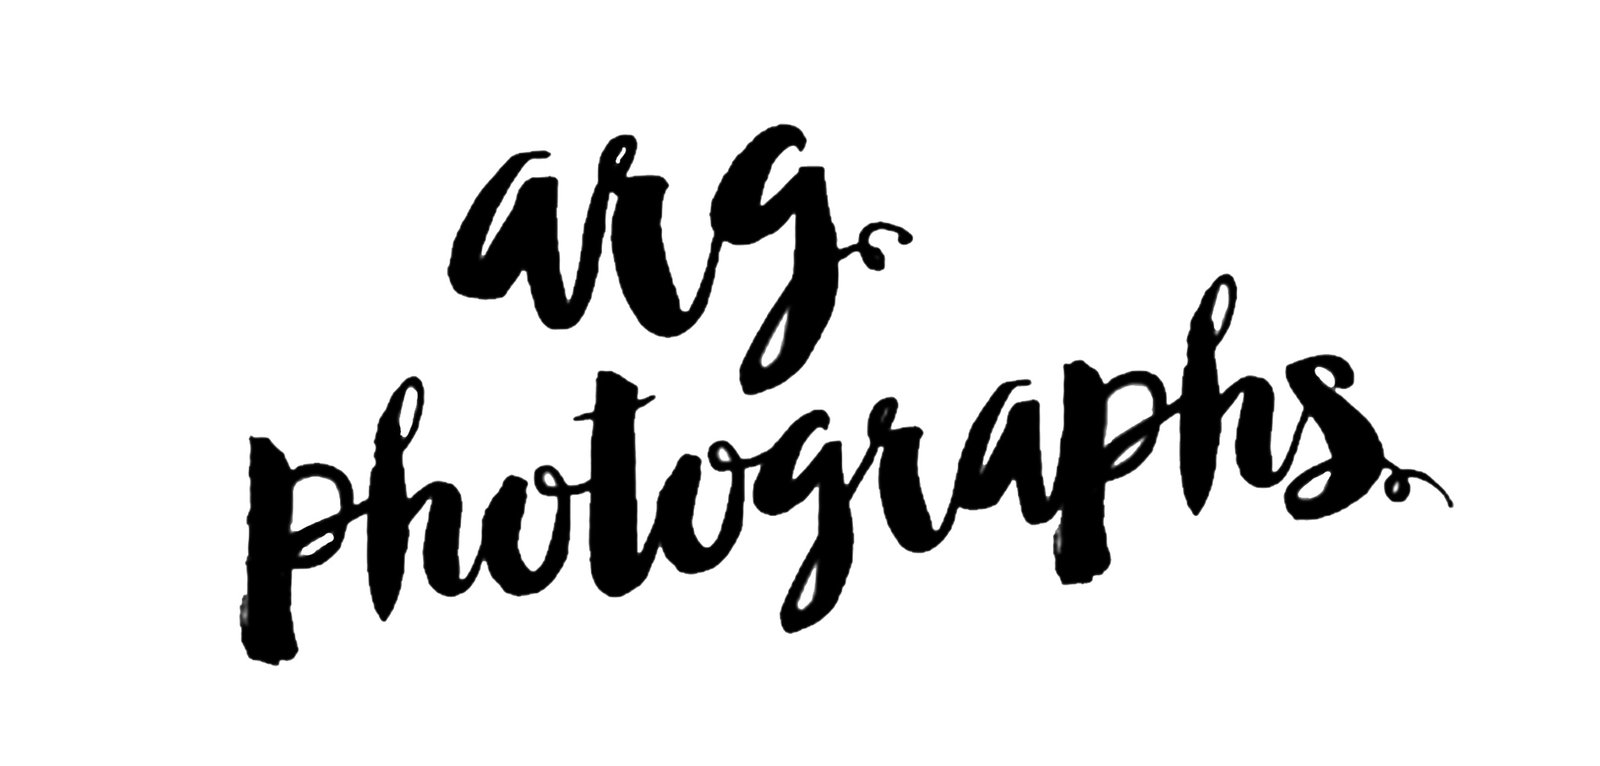 ARG Photographs